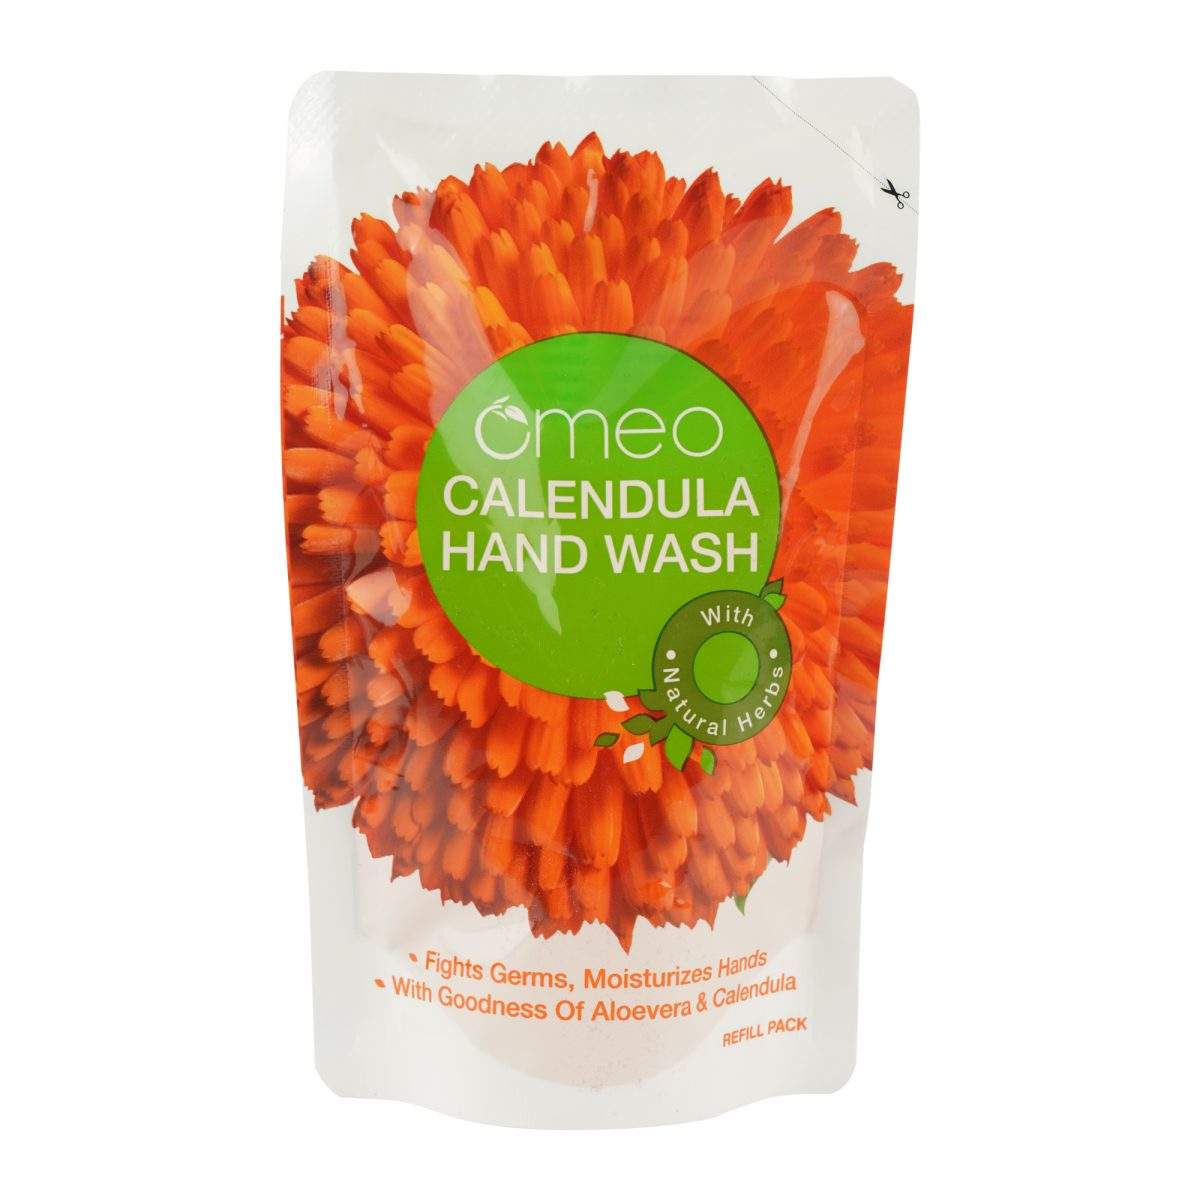 Omeo Calendula Hand Wash Refill Pack